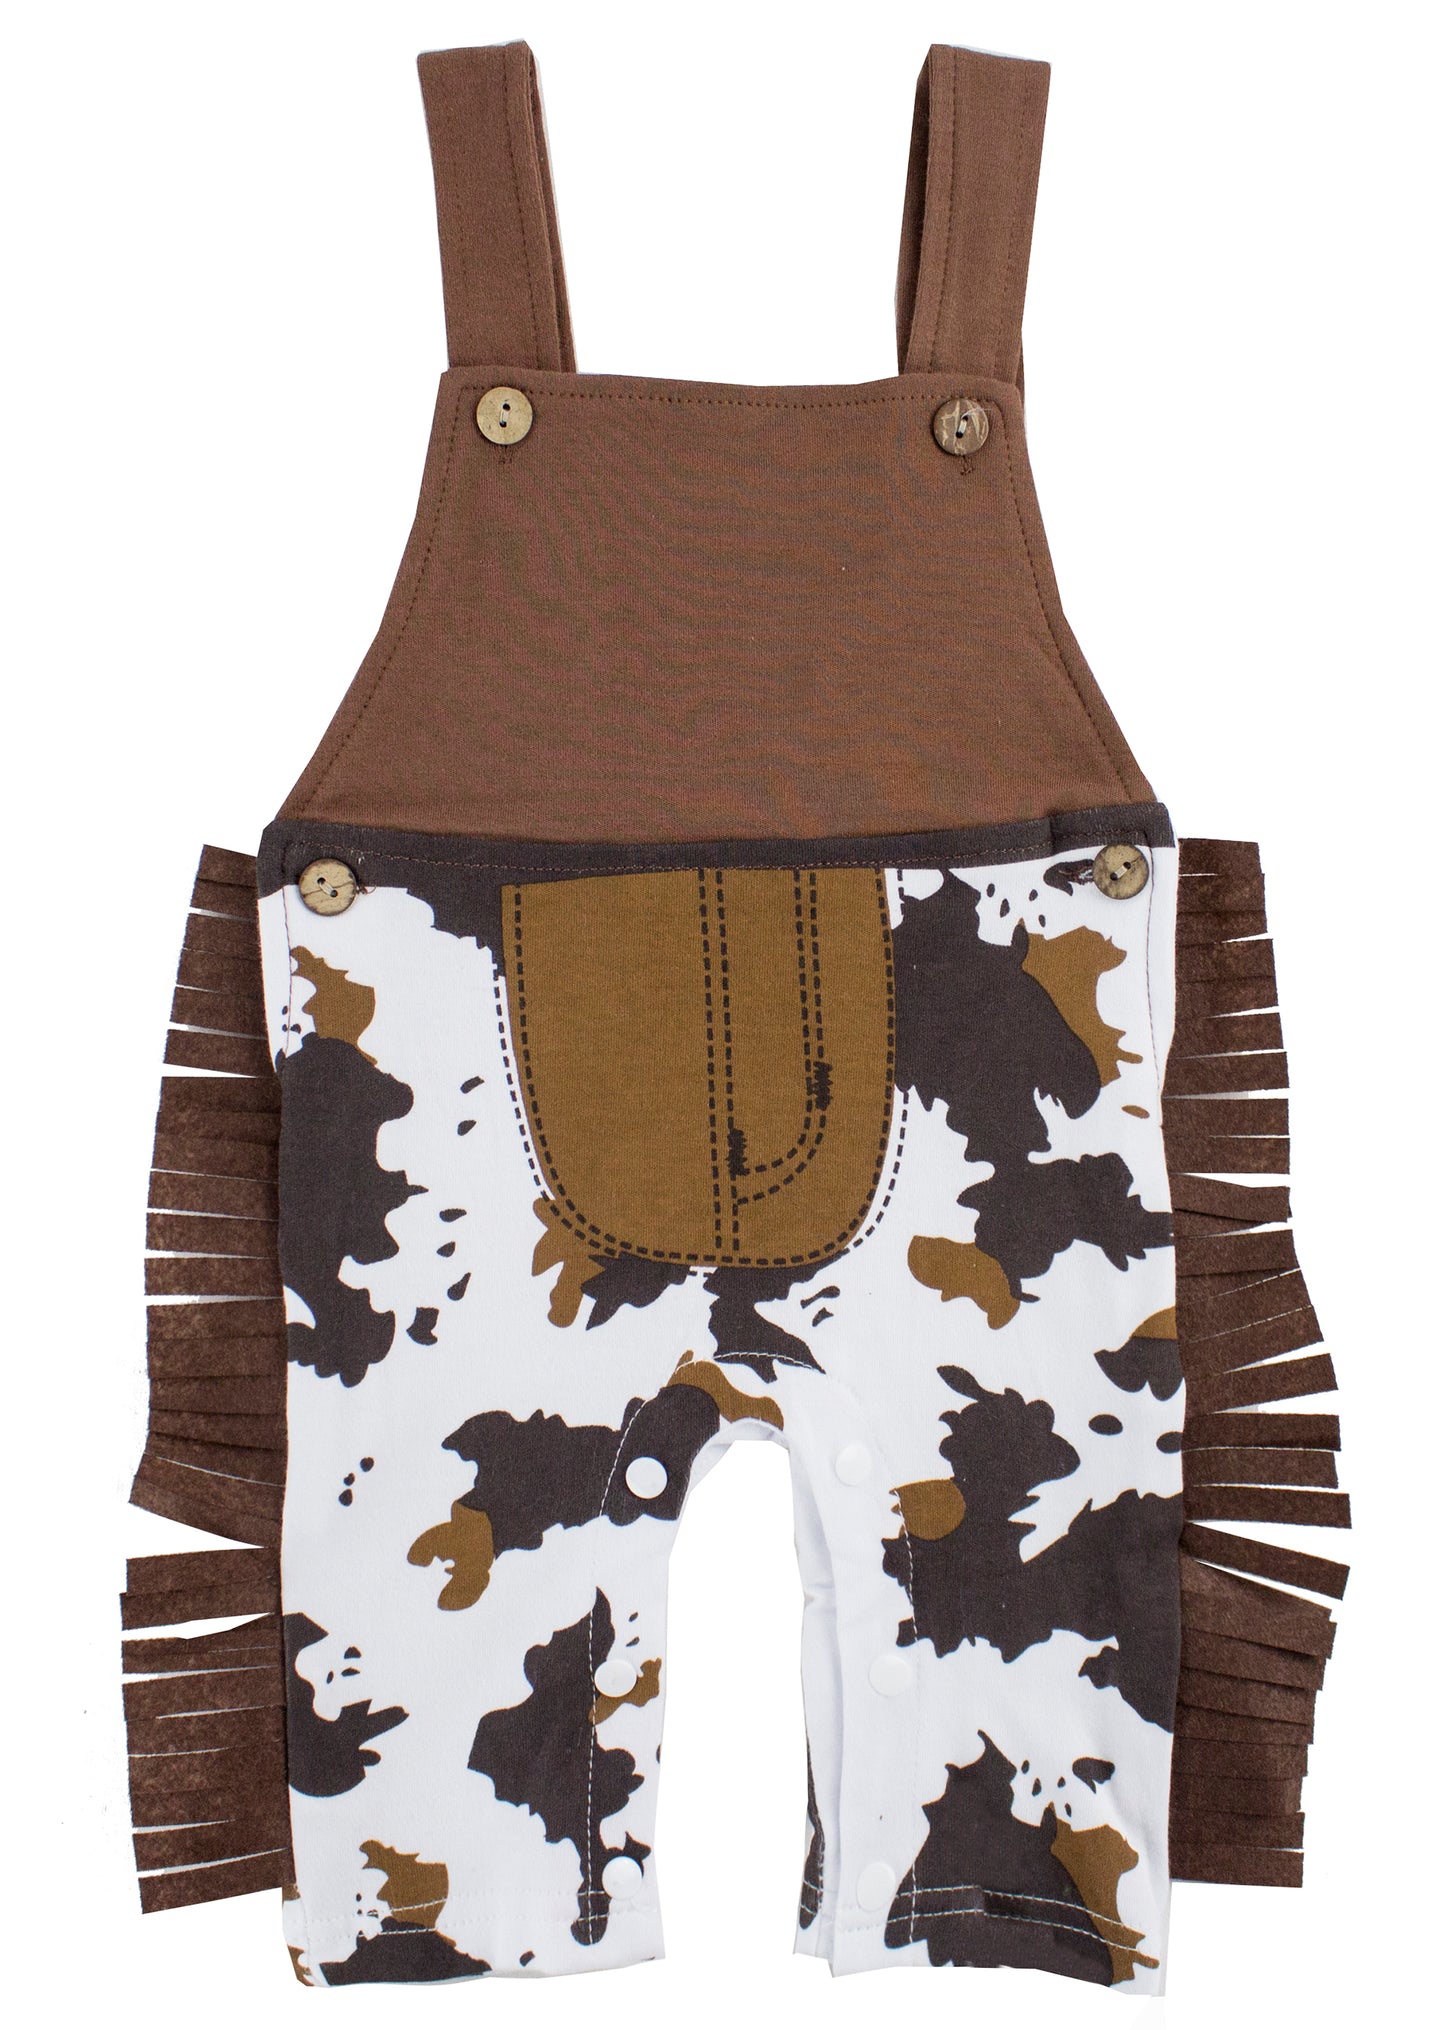 Brown Cowboy Overalls, Hat, Handkerchief 3pcs Baby Costume